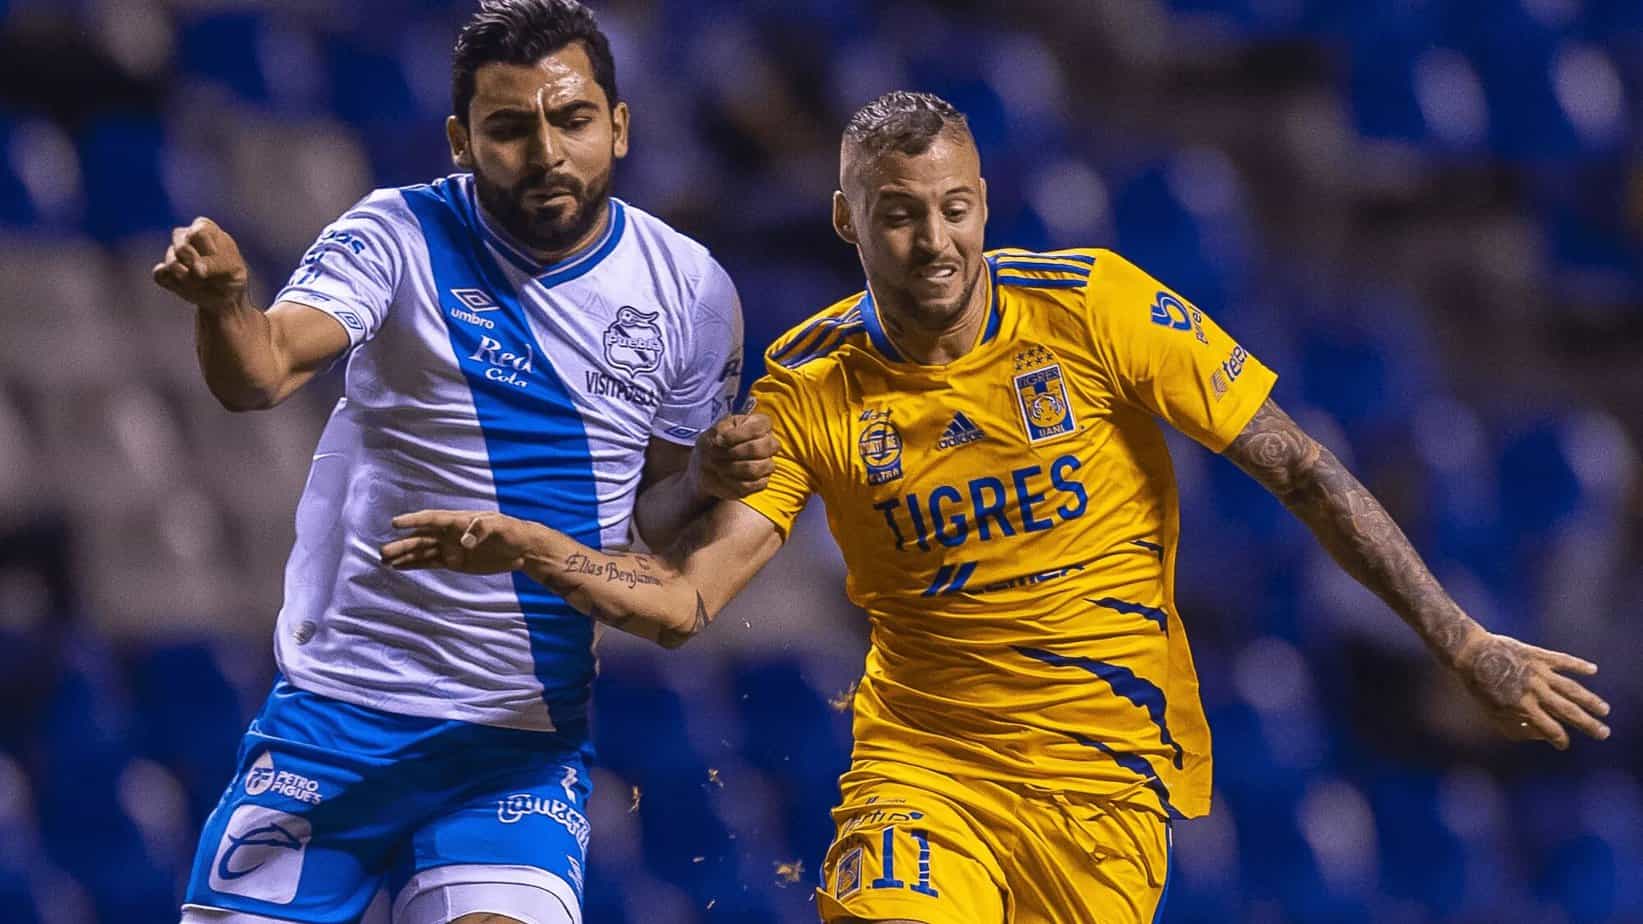 Cuartos de Final de la Liguilla: Previa de Puebla vs Tigres